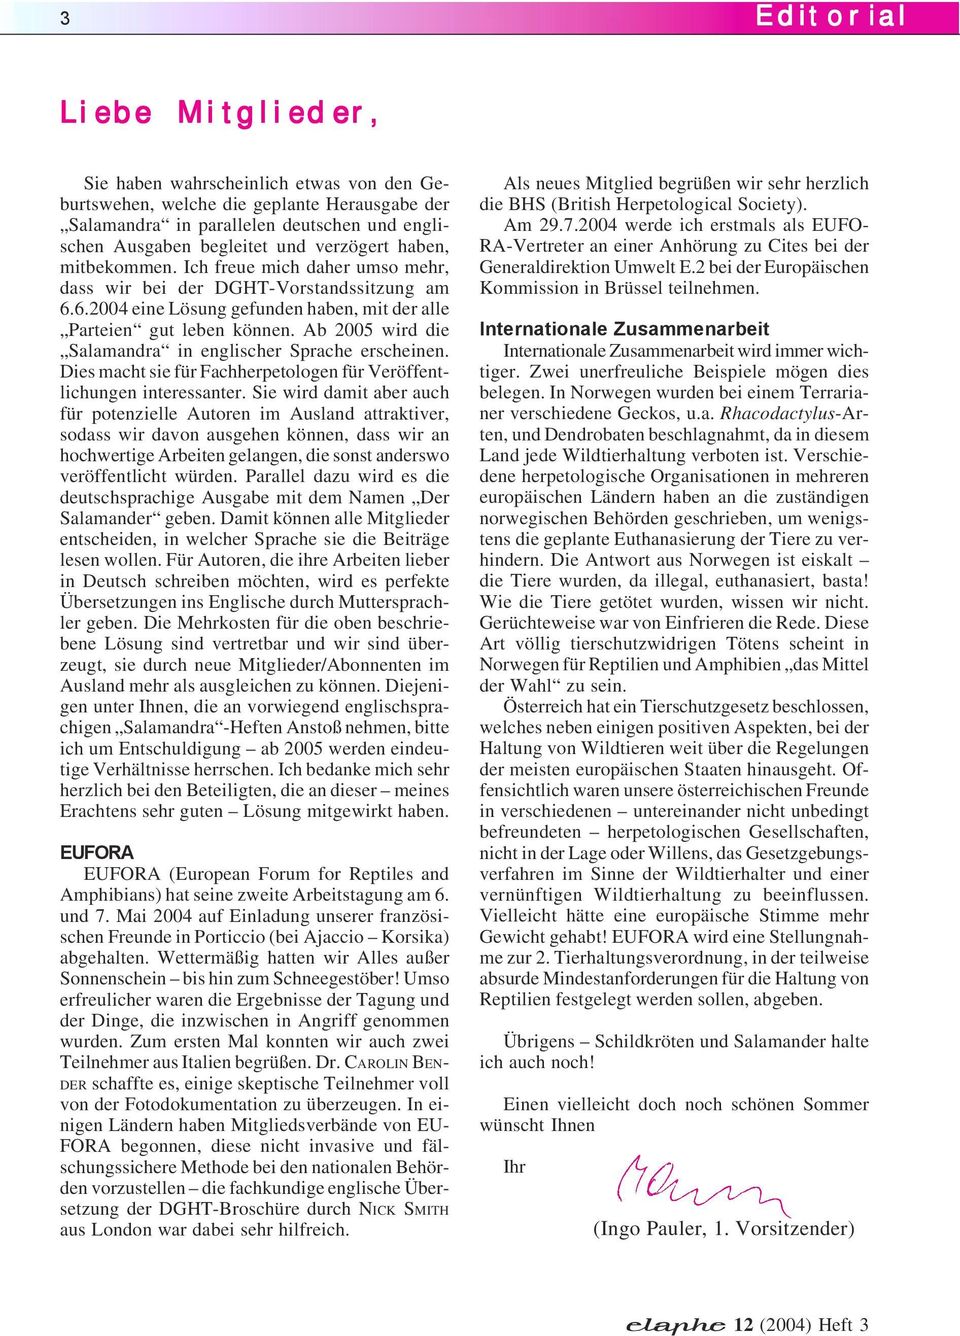 Ab 2005 wird die Salamandra in englischer Sprache erscheinen. Dies macht sie für Fachherpetologen für Veröffentlichungen interessanter.